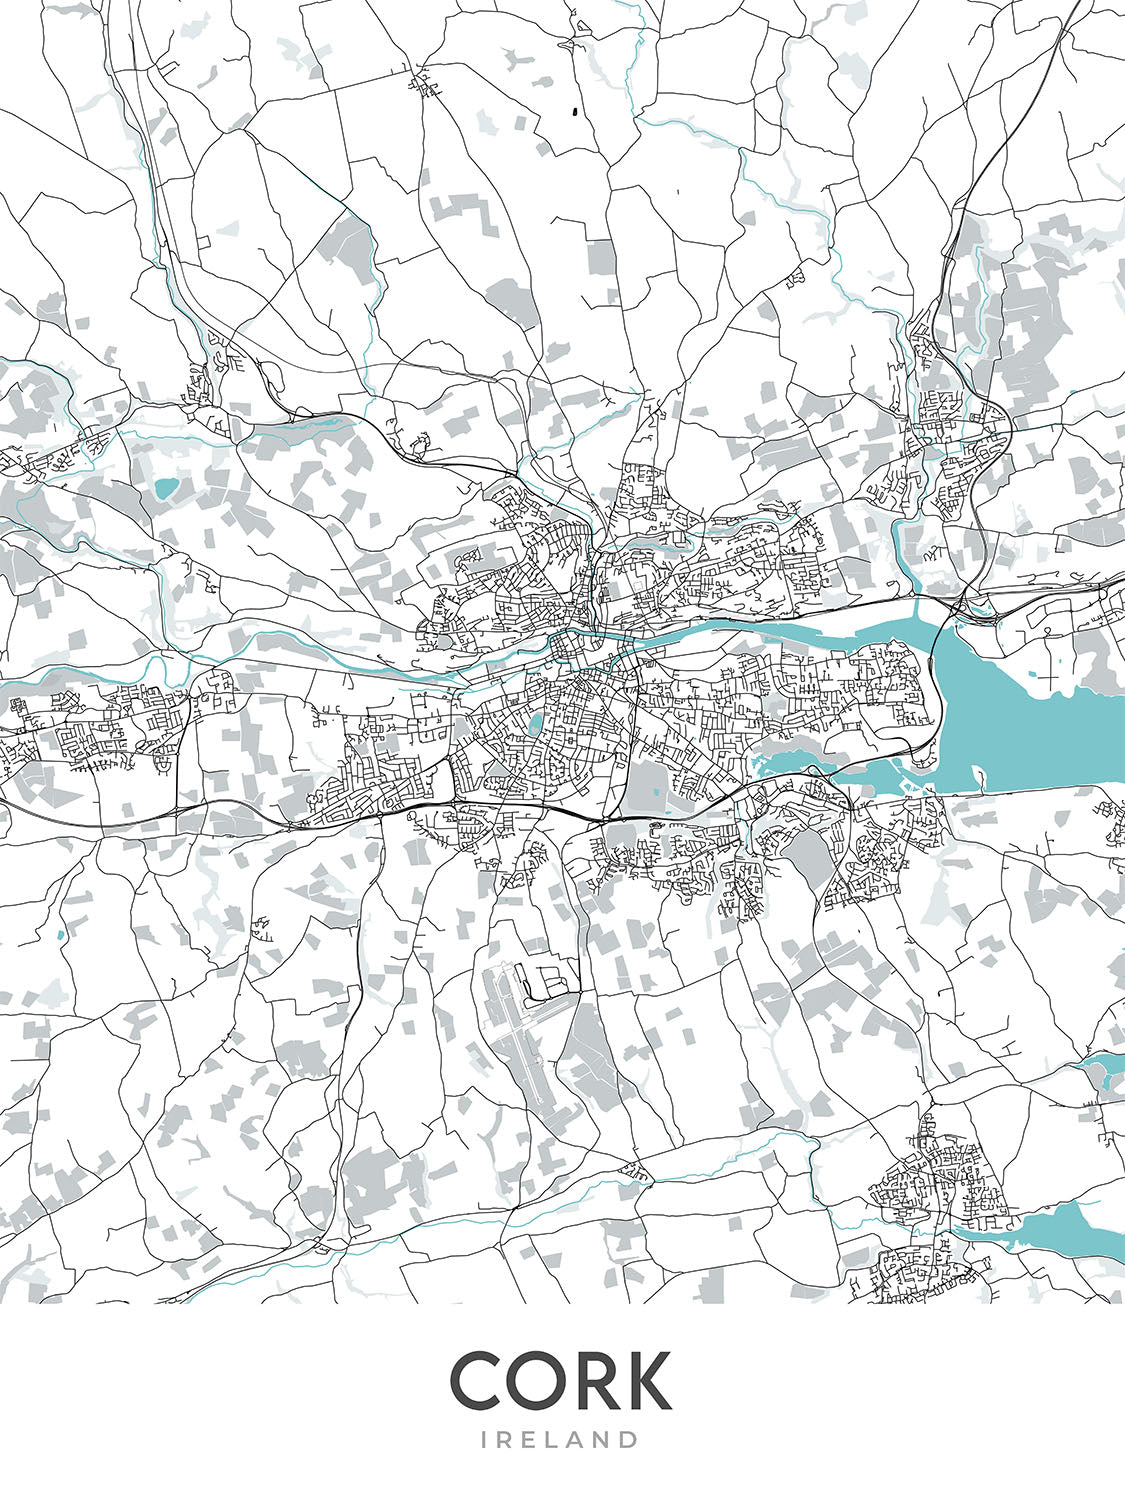 Mapa moderno de la ciudad de Cork, Irlanda: Castillo de Blarney, Ayuntamiento de Cork, Parque Fitzgerald, N20, N22